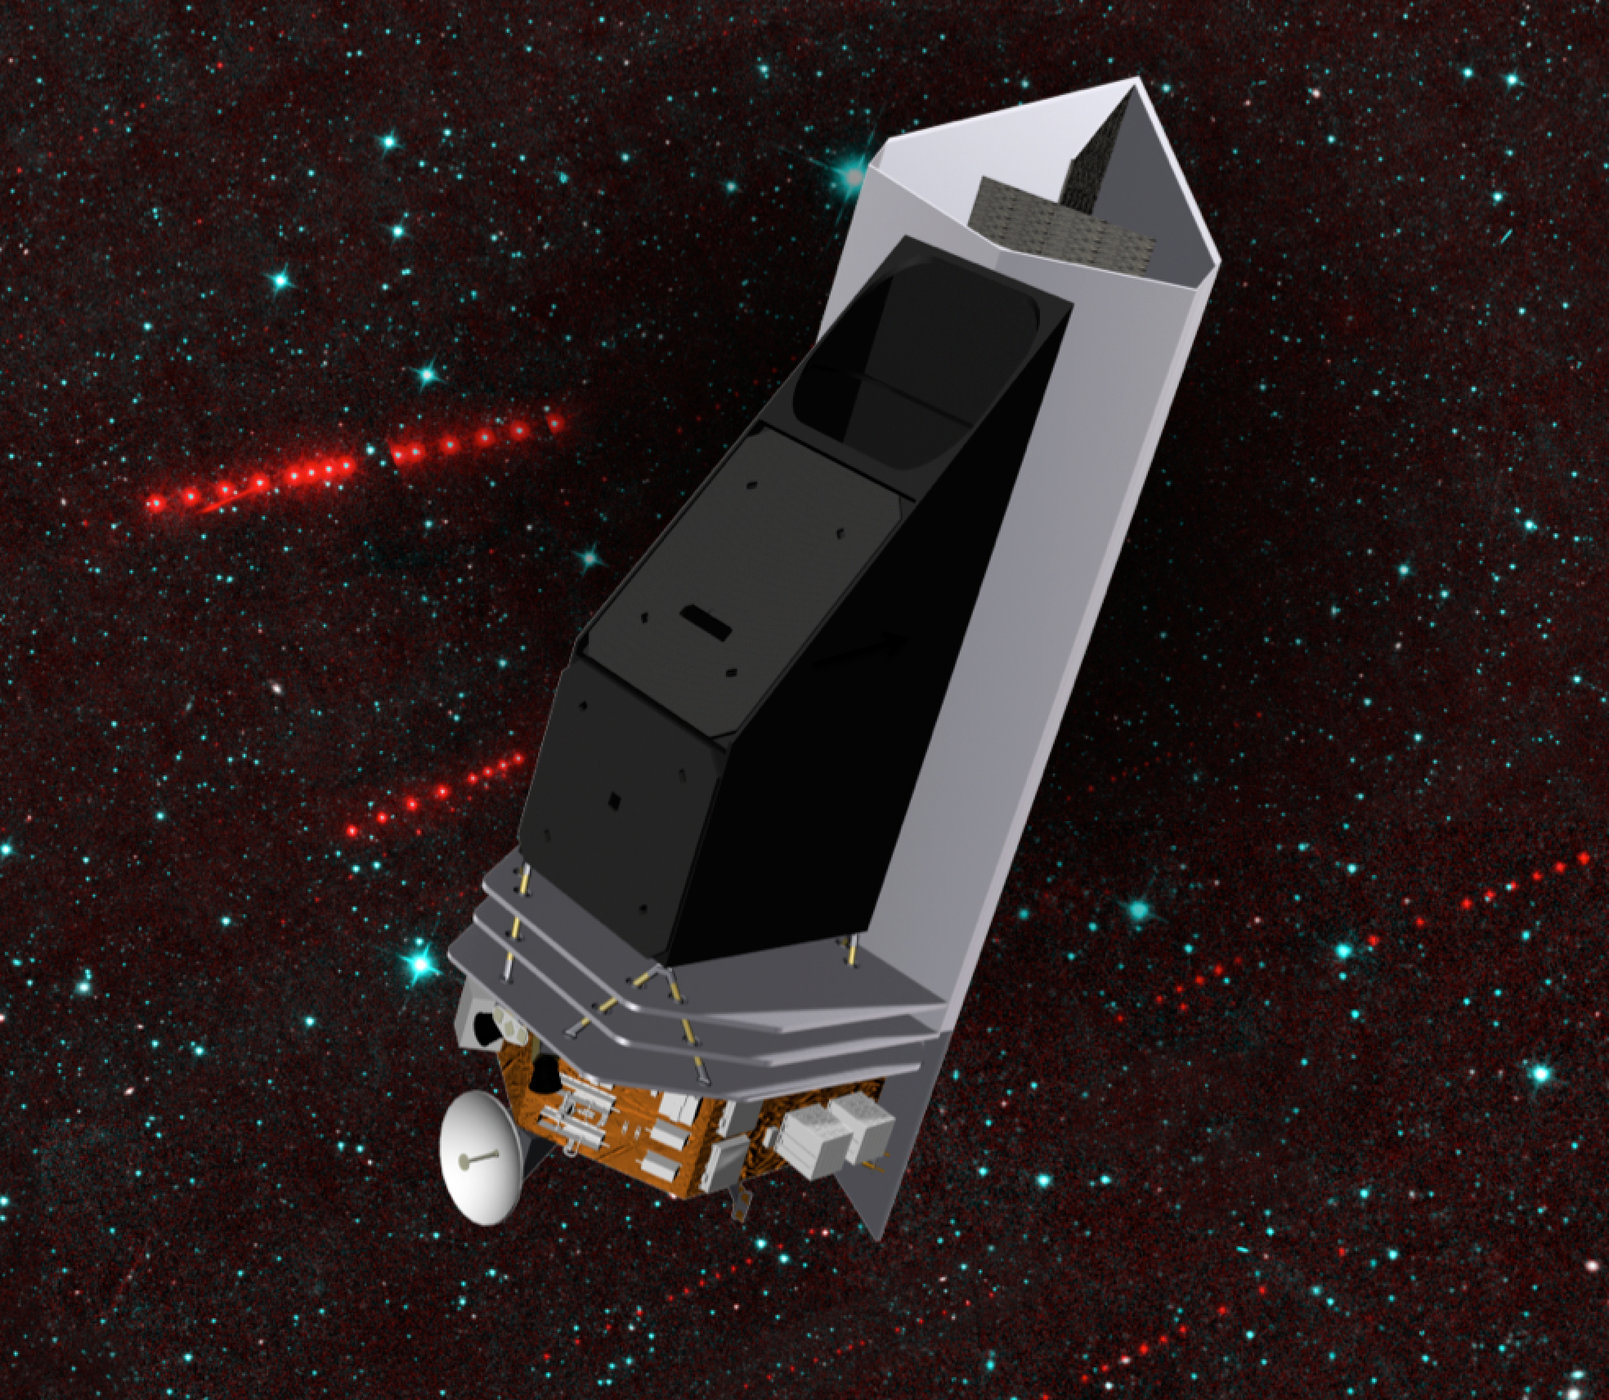 Künstlerische Darstellung der vorgeschlagenen NEOCam-Raumsonde, die nach Asteroiden suchen würde, die eine Bedrohung für die Erde darstellen könnten. Bild: NASA/JPL-Caltech